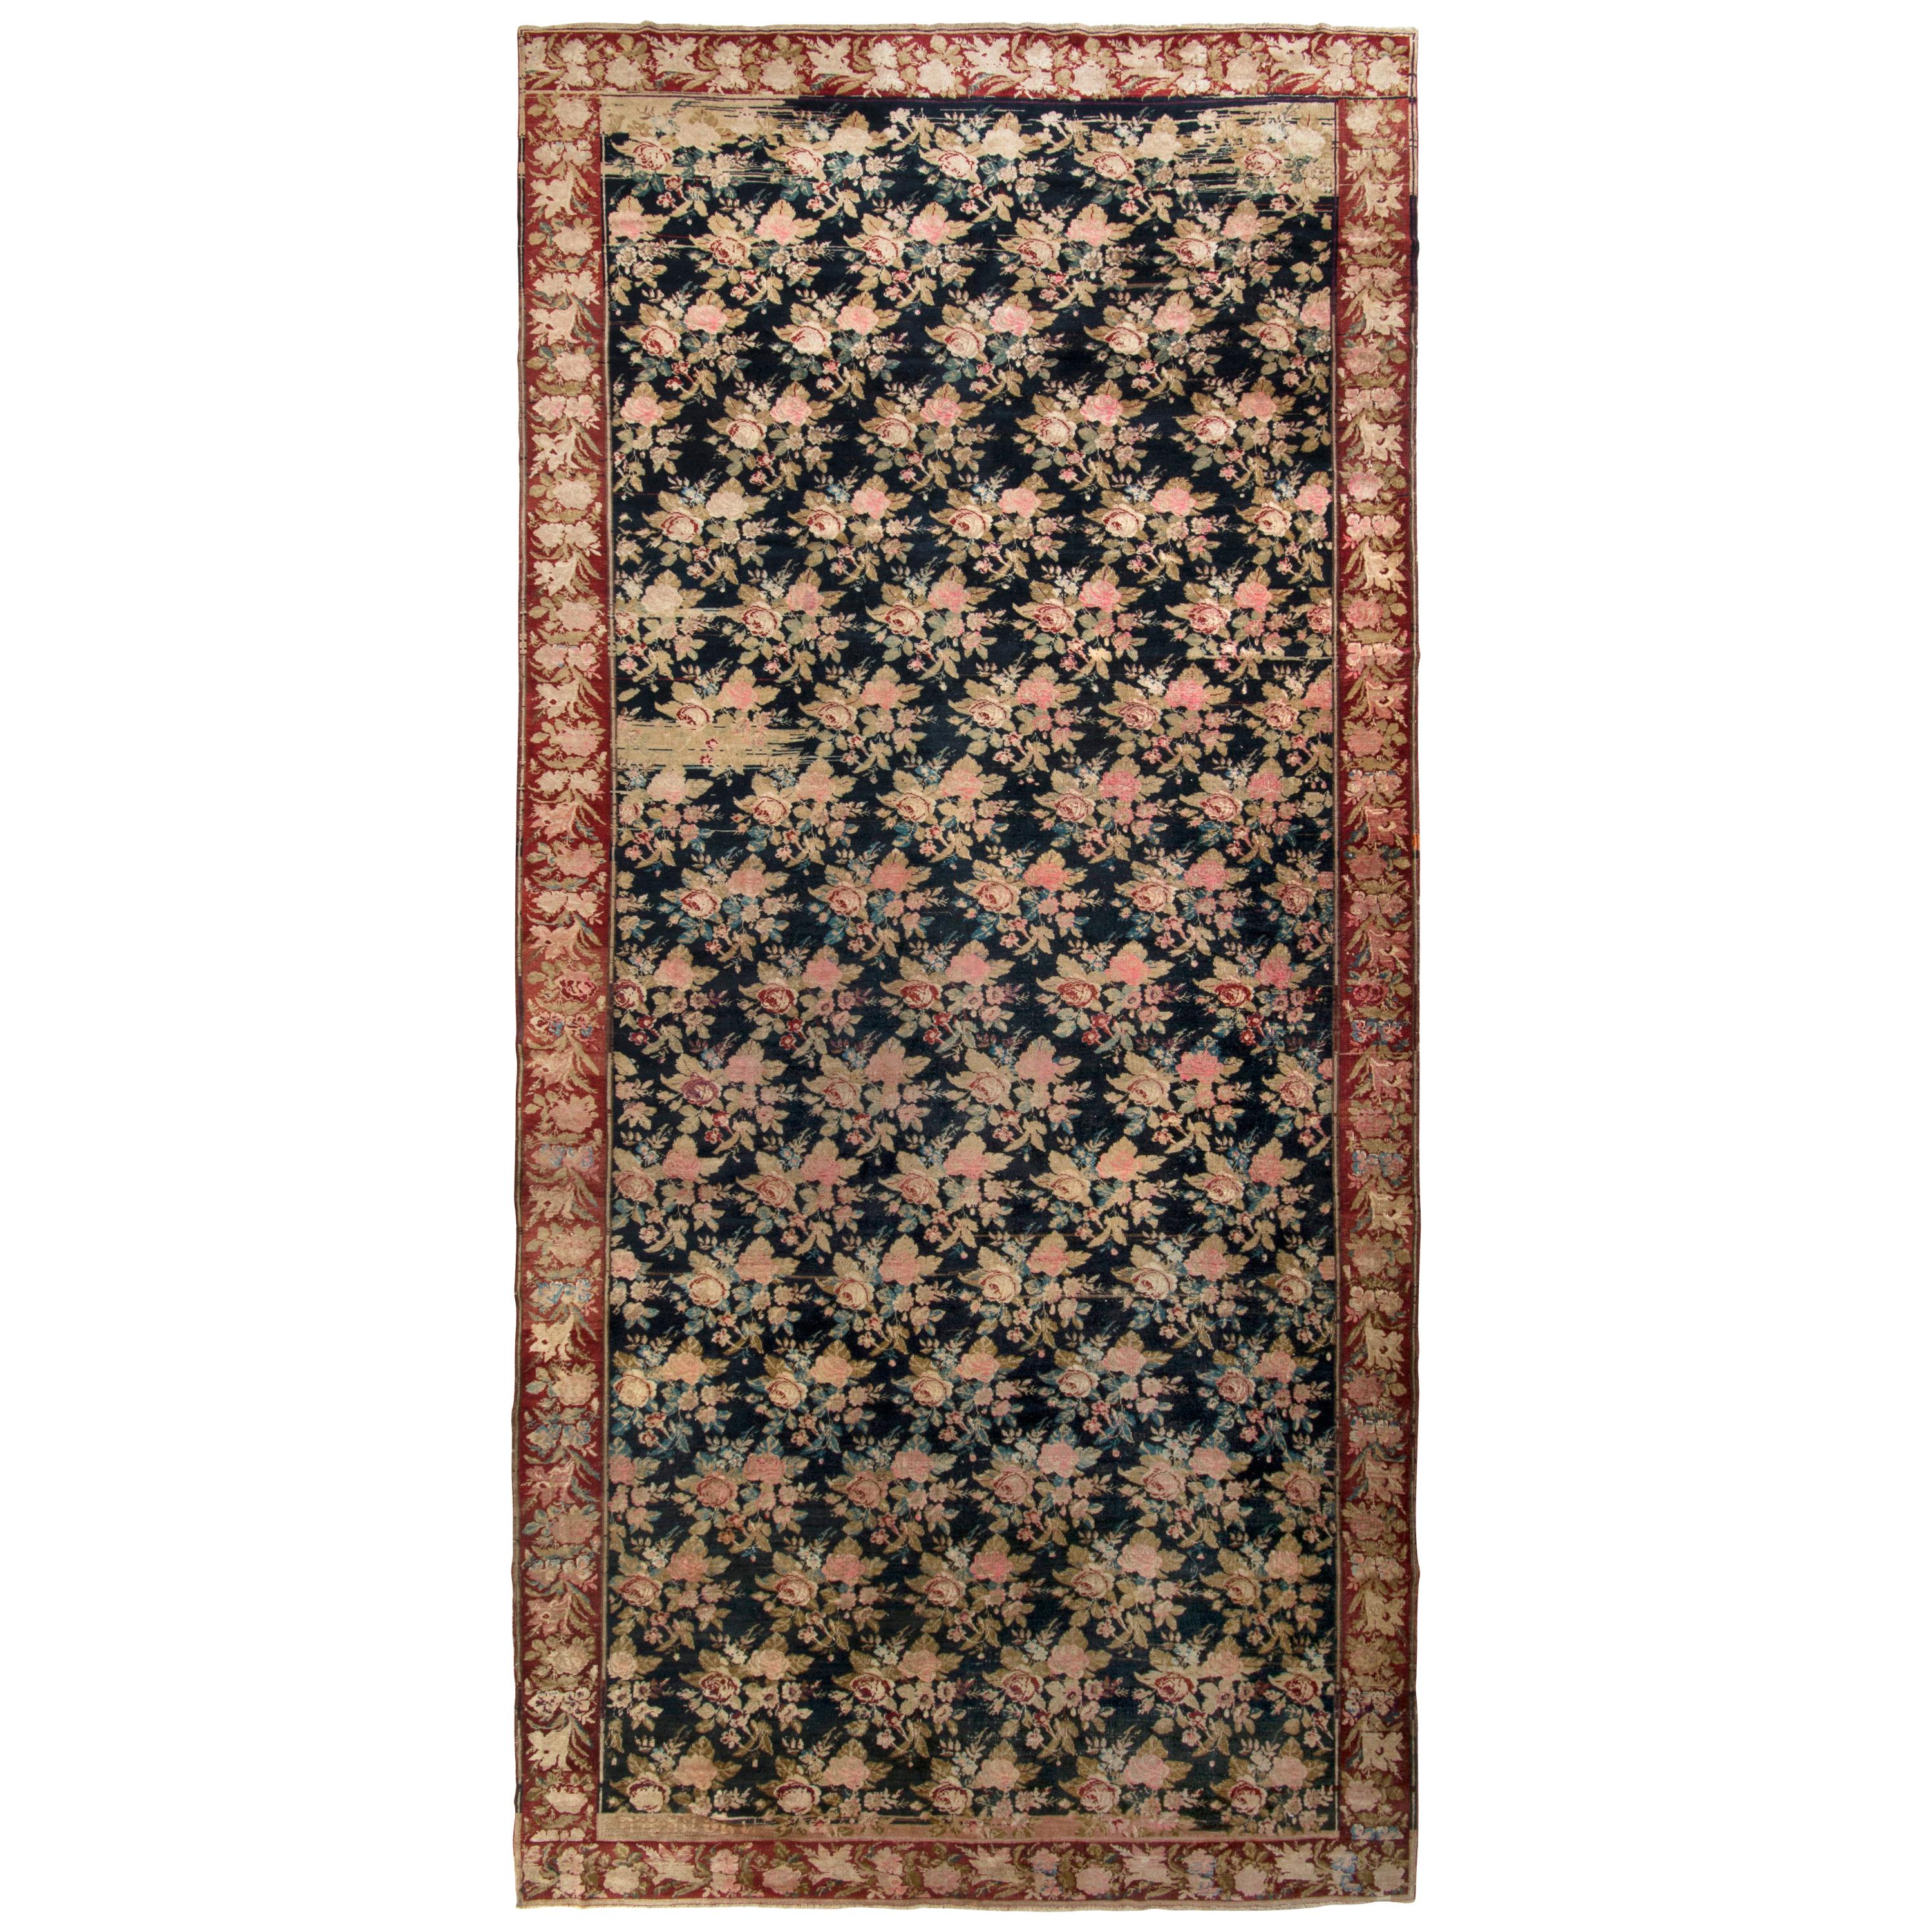 Hand-Knotted Antique Karabagh Rug, Pink and Black Floral Pattern